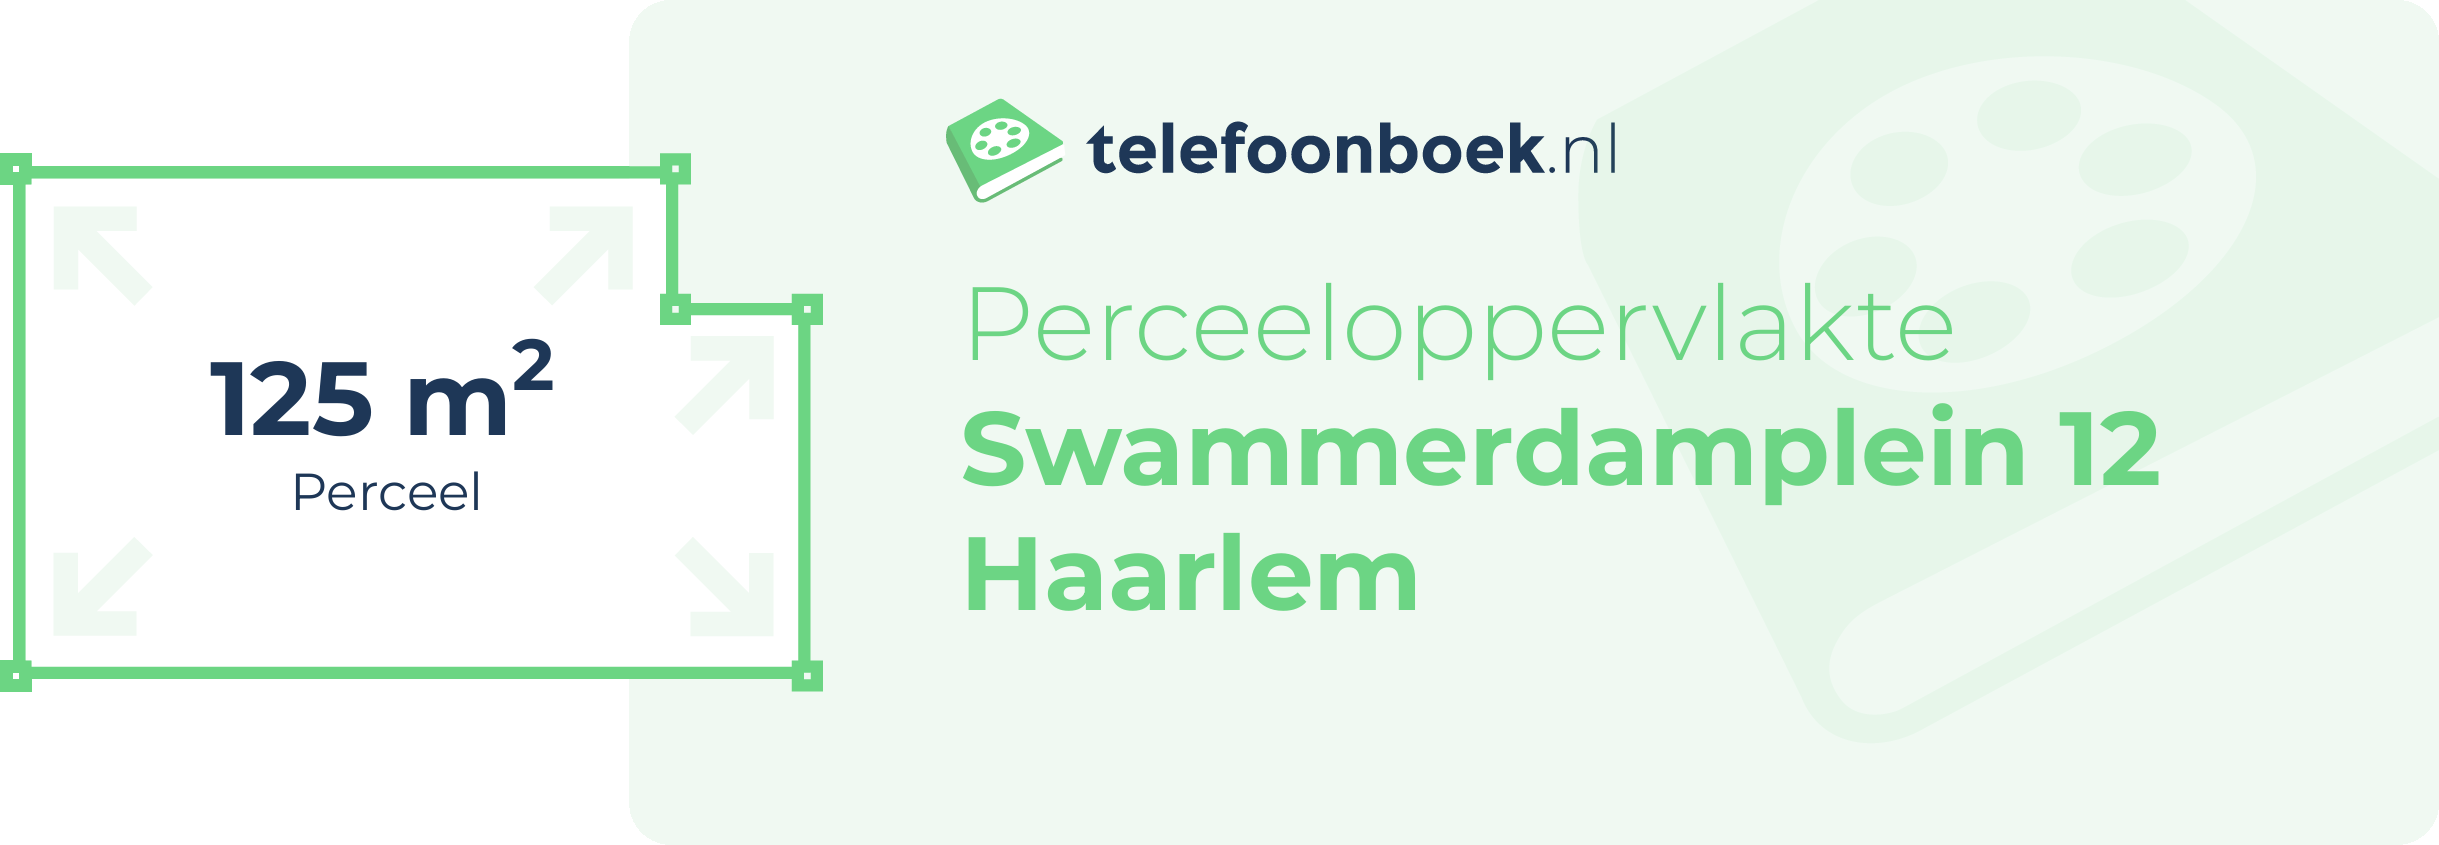 Perceeloppervlakte Swammerdamplein 12 Haarlem